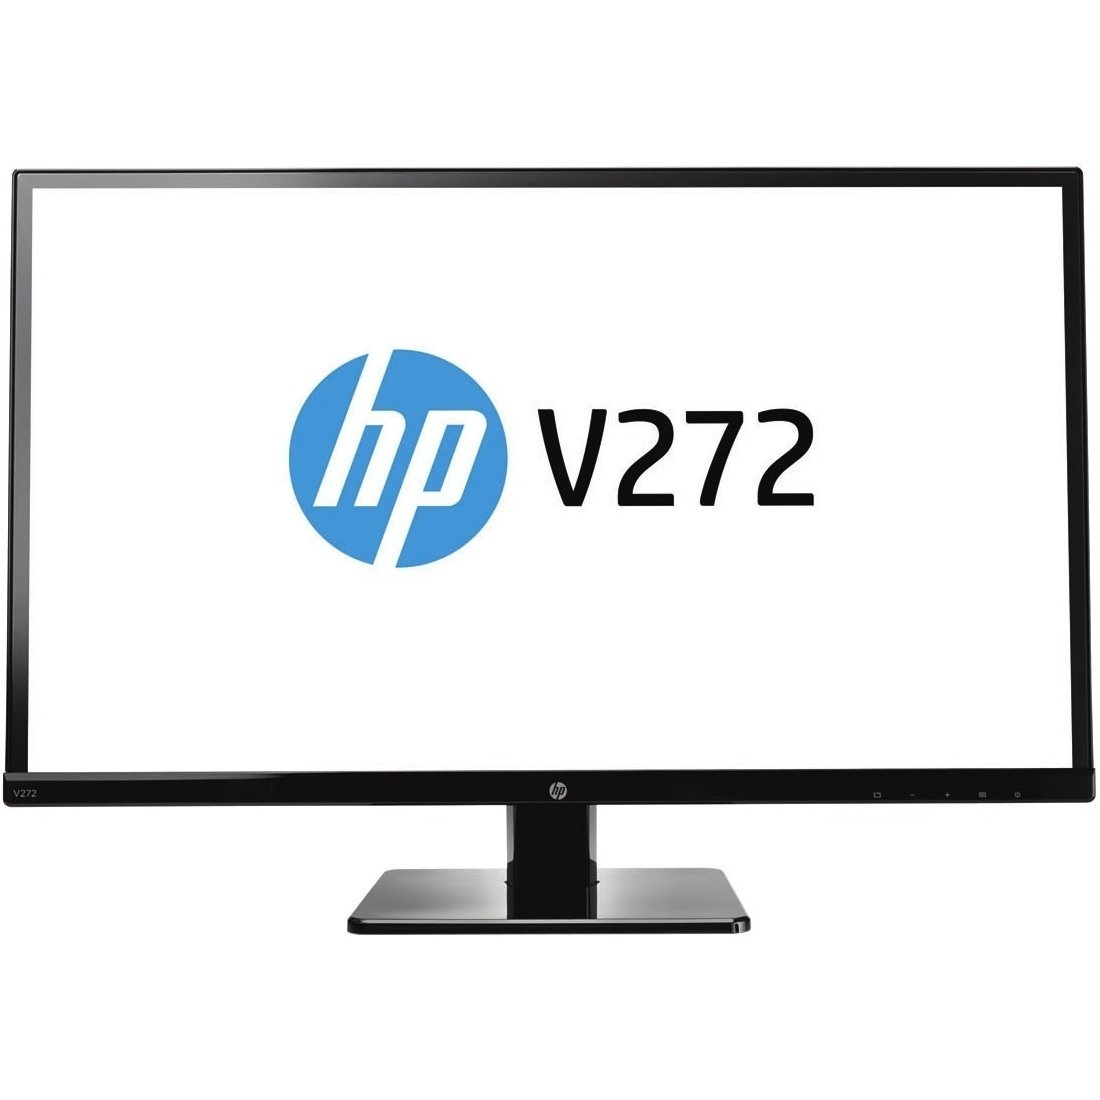 Màn hình máy tính HP V272 (M4B78AA) -  LCD, 27 inch, 1920x1080 pixel